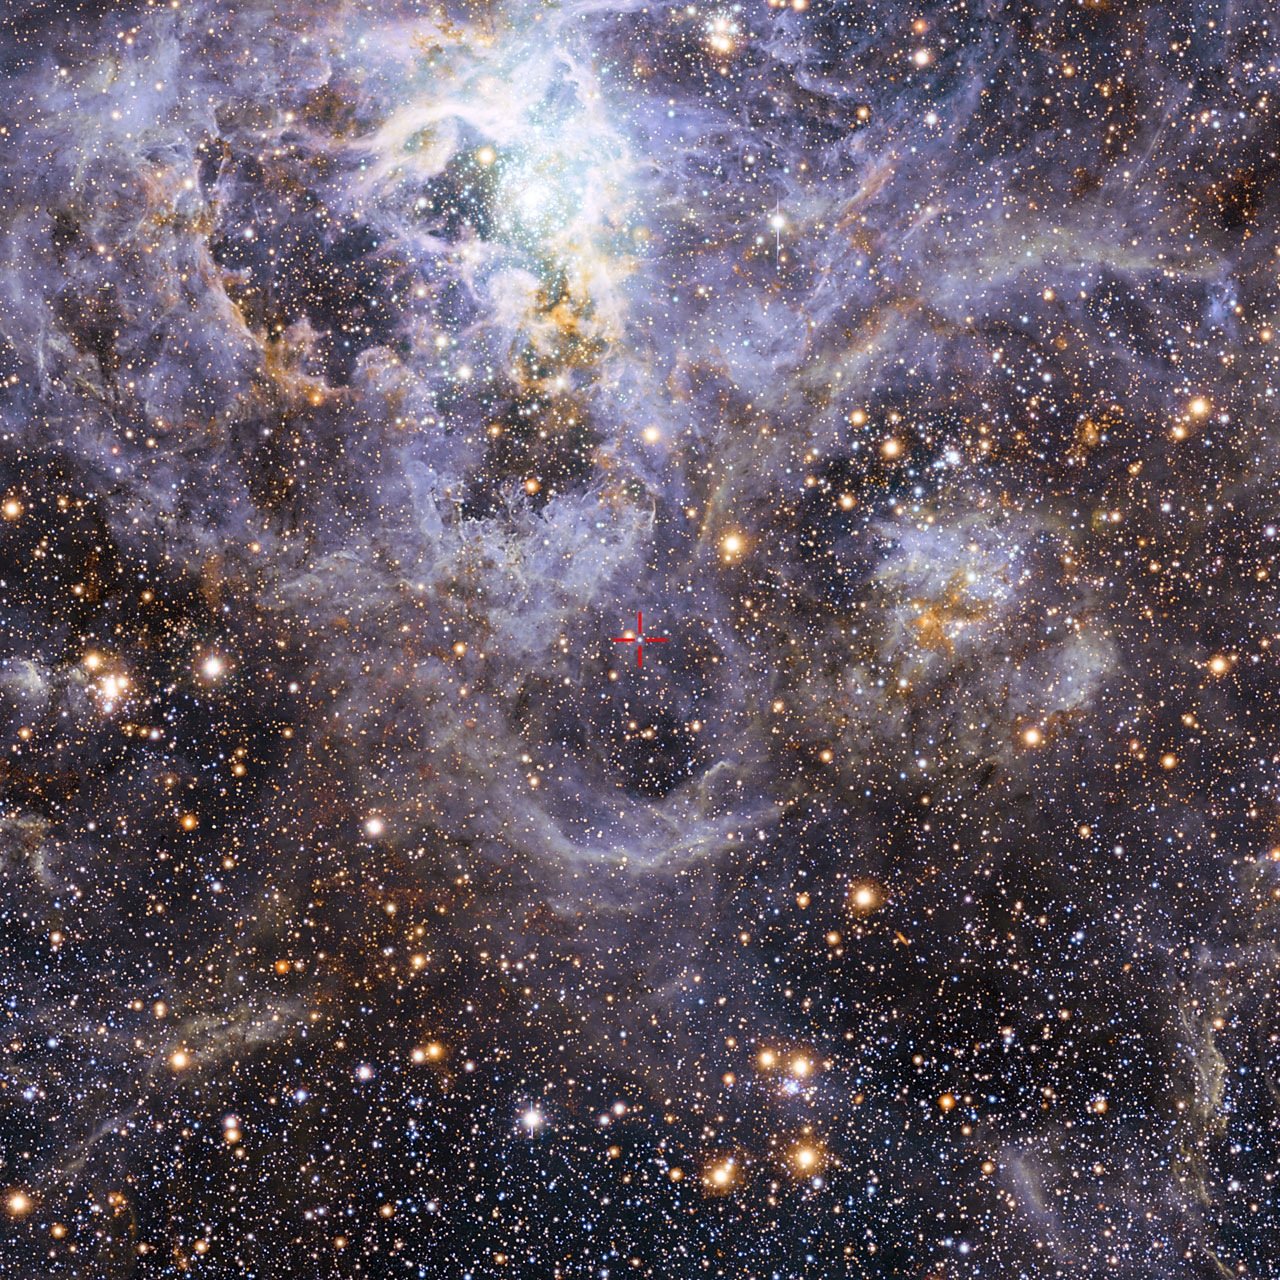 Dieses Bild zeigt die Position von VFTS 352 (M.) – des bisher heißesten und massereichsten bekannten Doppelsternsystems, bei dem die zwei Komponenten in Kontakt miteinander stehen und Materie teilen. Die zwei Sterne befinden sich etwa 160.000 Lichtjahre von der Erde entfernt in der Großen Magellanschen Wolke. Dieses faszinierende System könnte auf ein dramatisches Ende zusteuern, entweder mit der Entstehung eines riesigen Einzelsterns oder als zukünftiges doppeltes Schwarzes Loch.